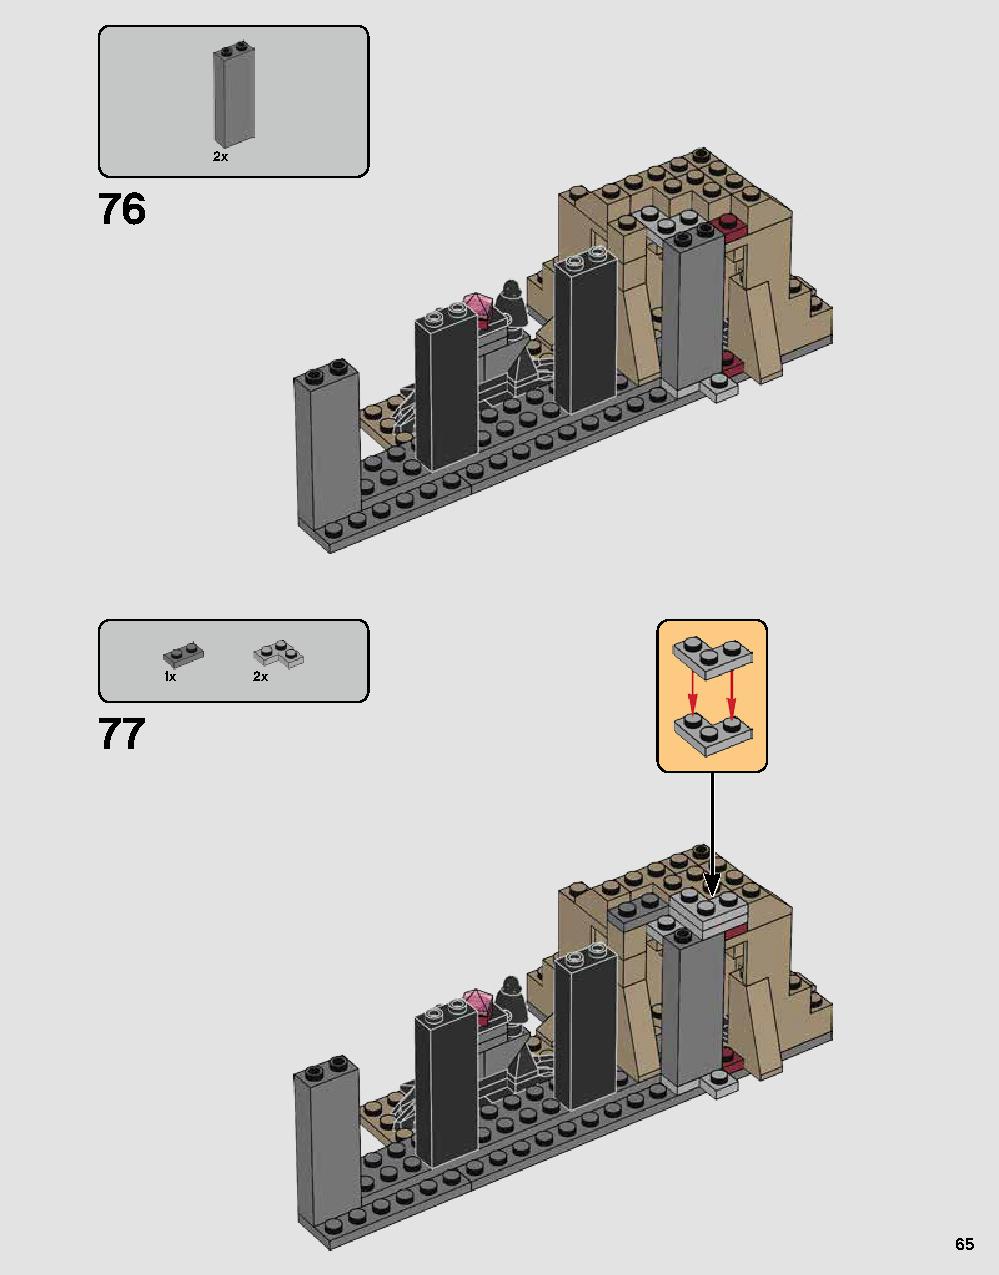 ダース・ベイダーの城 75251 レゴの商品情報 レゴの説明書・組立方法 65 page